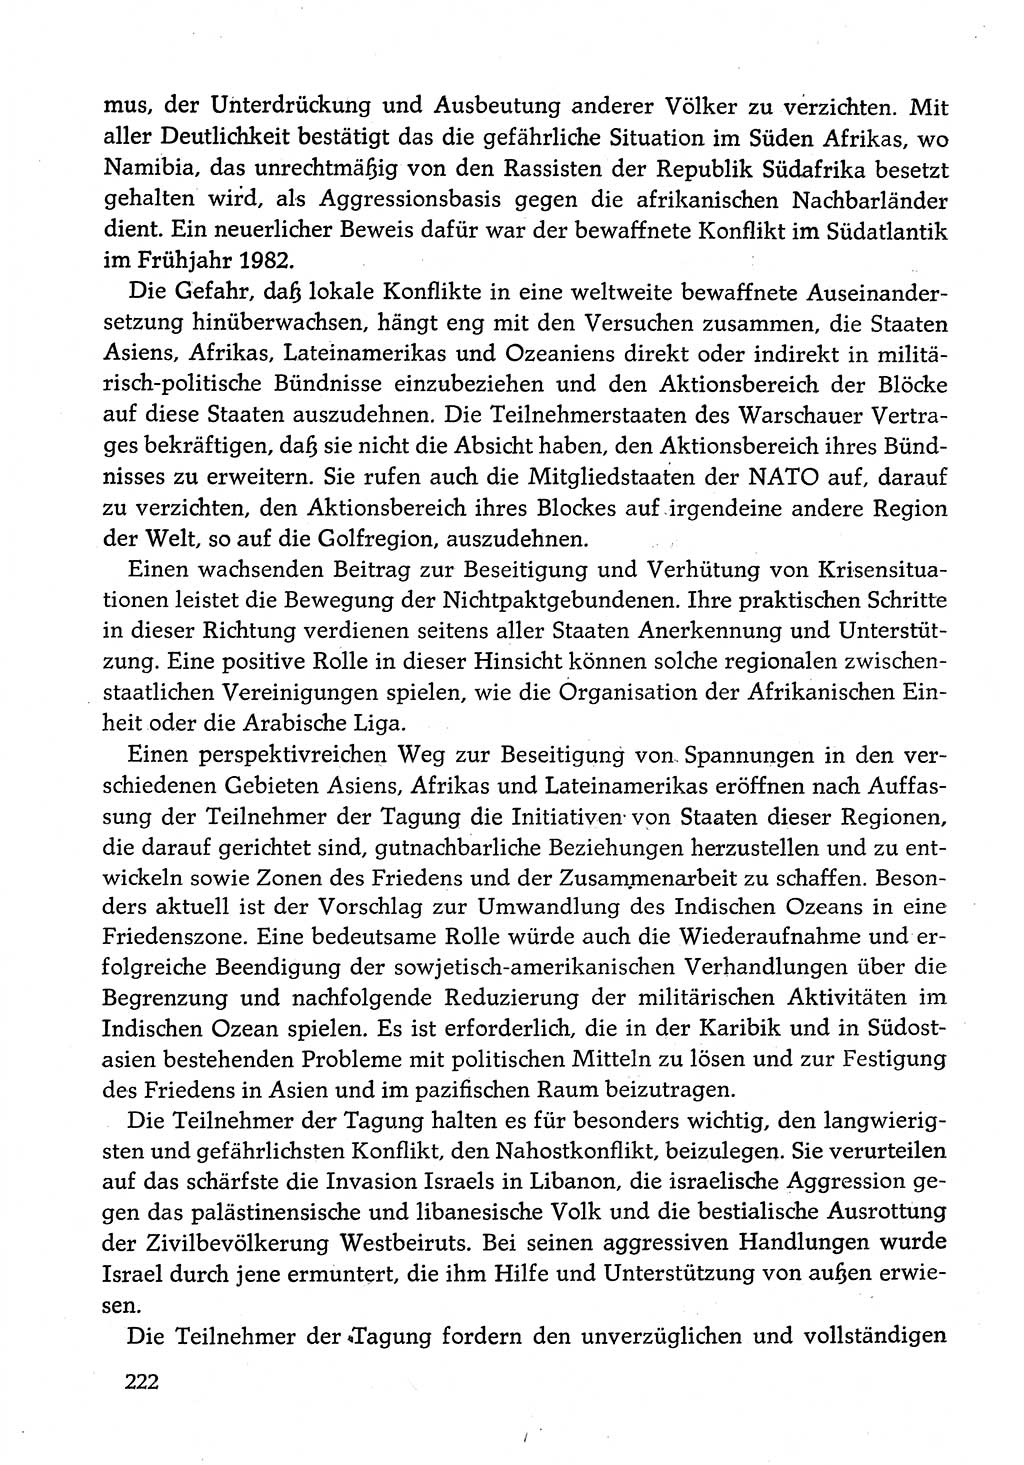 Dokumente der Sozialistischen Einheitspartei Deutschlands (SED) [Deutsche Demokratische Republik (DDR)] 1982-1983, Seite 222 (Dok. SED DDR 1982-1983, S. 222)